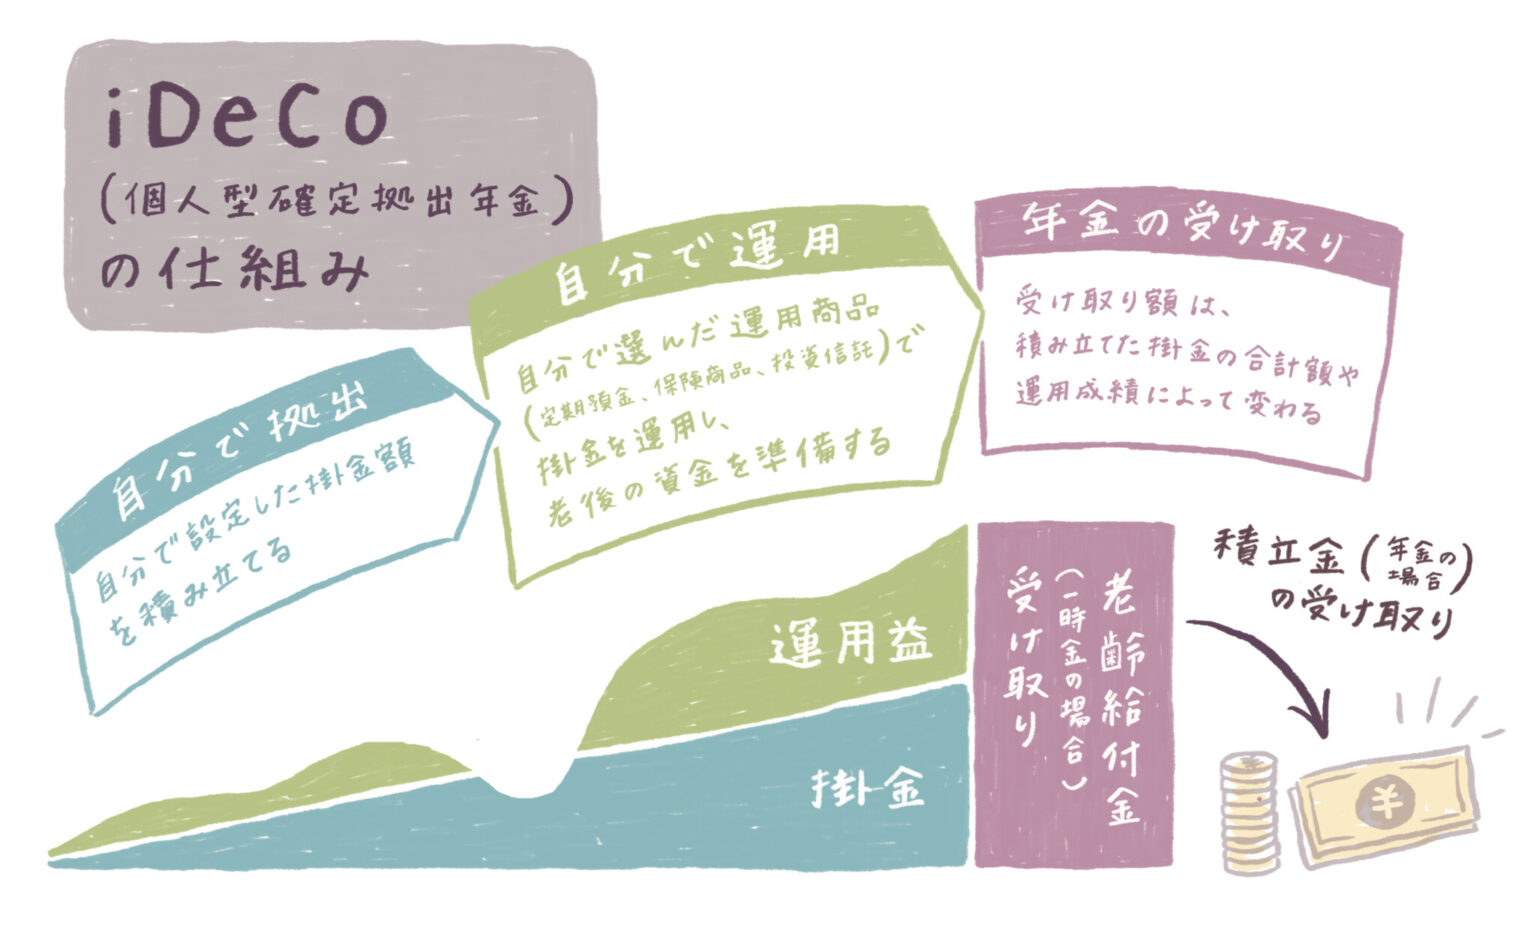 出典：iDeCo公式サイト「iDeCo（イデコ）の特徴」https://www.ideco-koushiki.jp/guide/